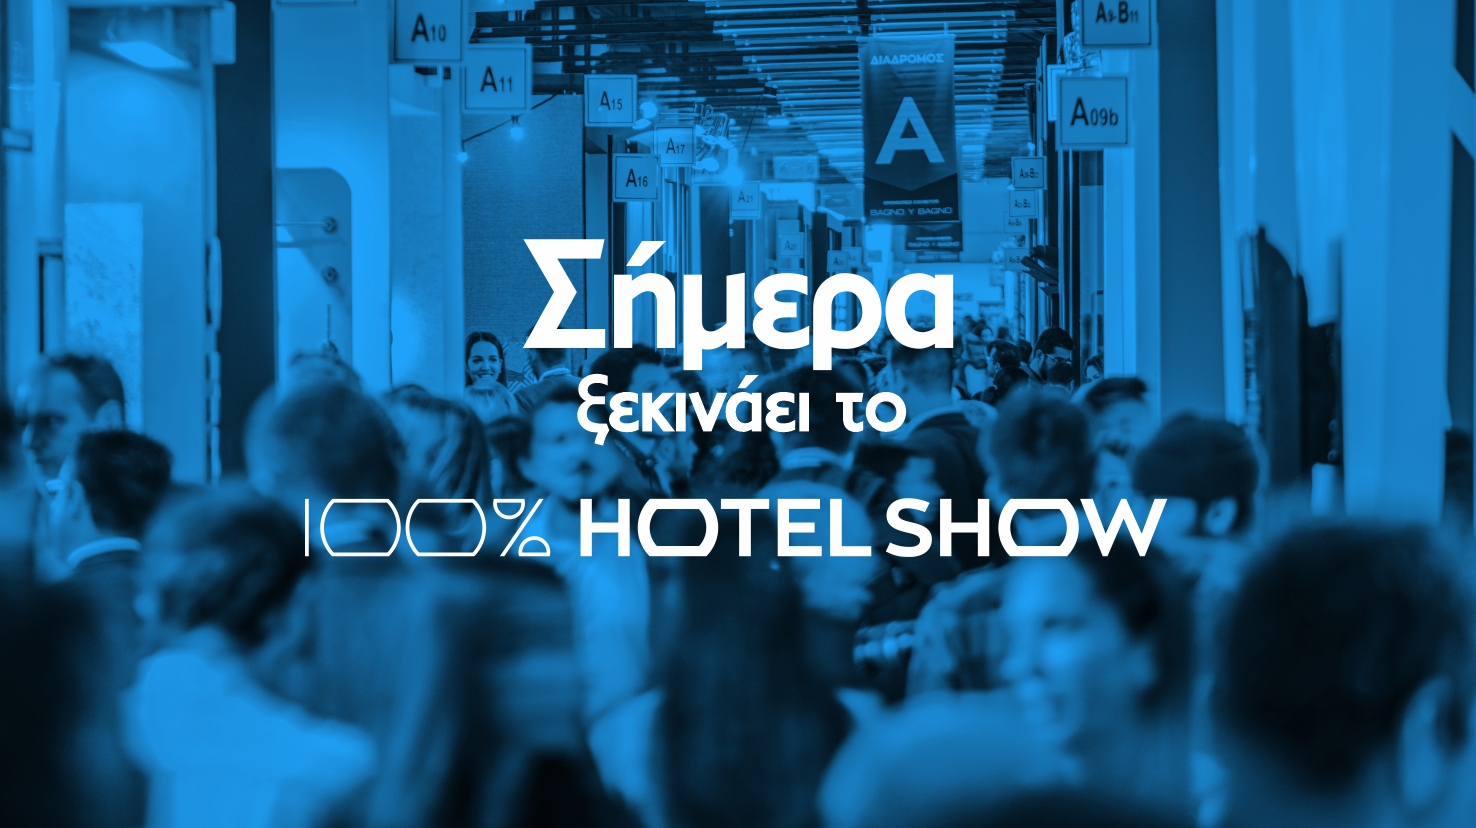 Σήμερα στις 17:00 Ξεκινάει το 100% Hotel Show 2019 (15-18 Νοεμβρίου στο MEC Παιανίας)